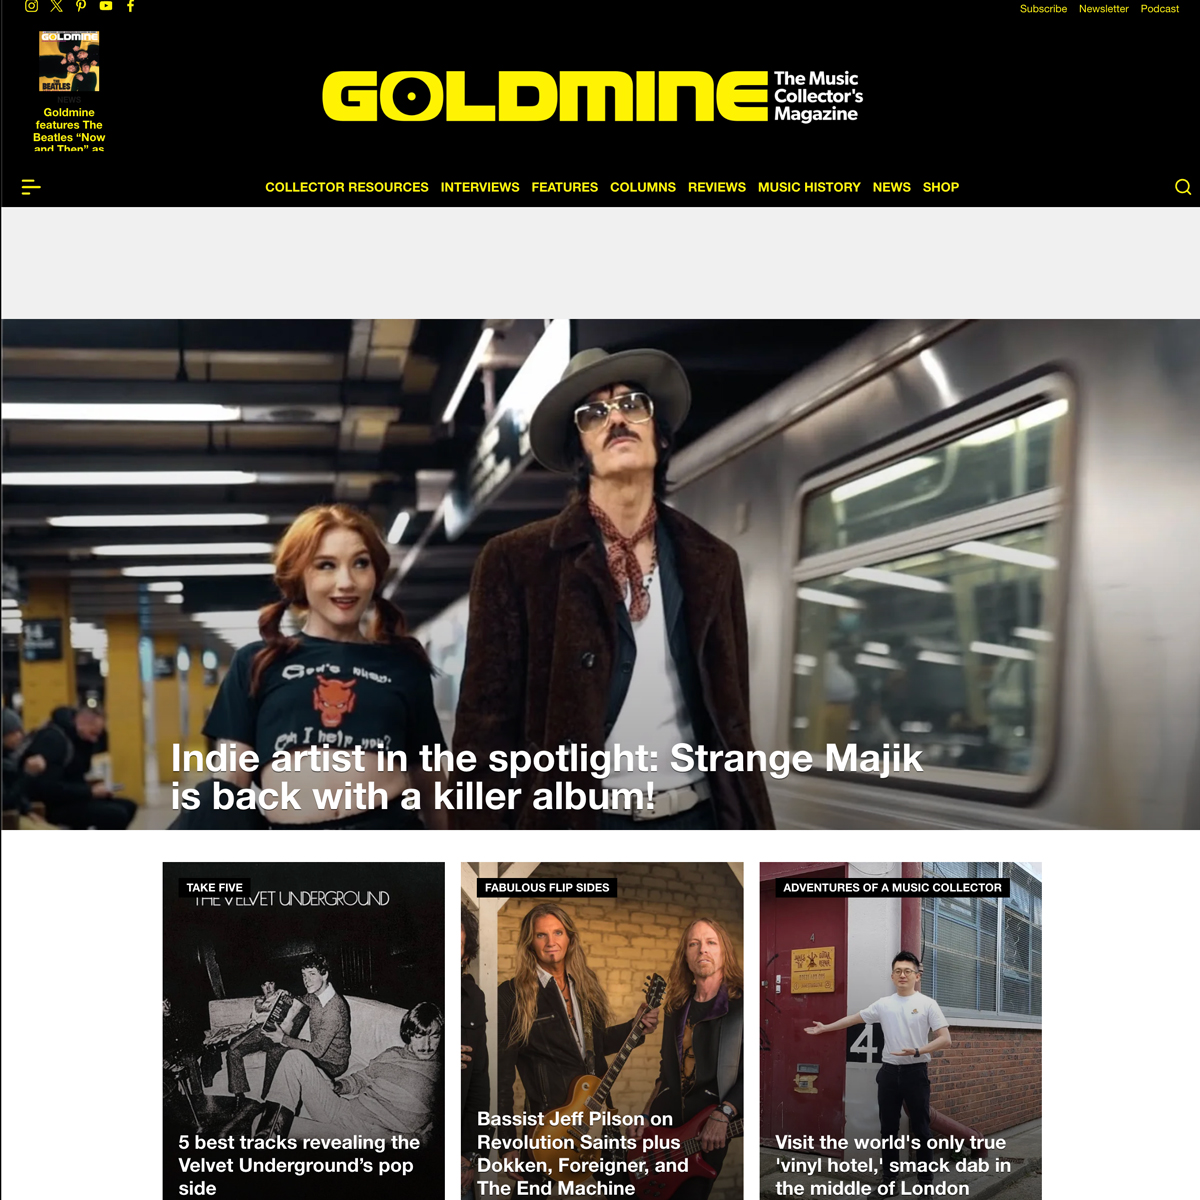 Goldmine Magazine features Strange Majik